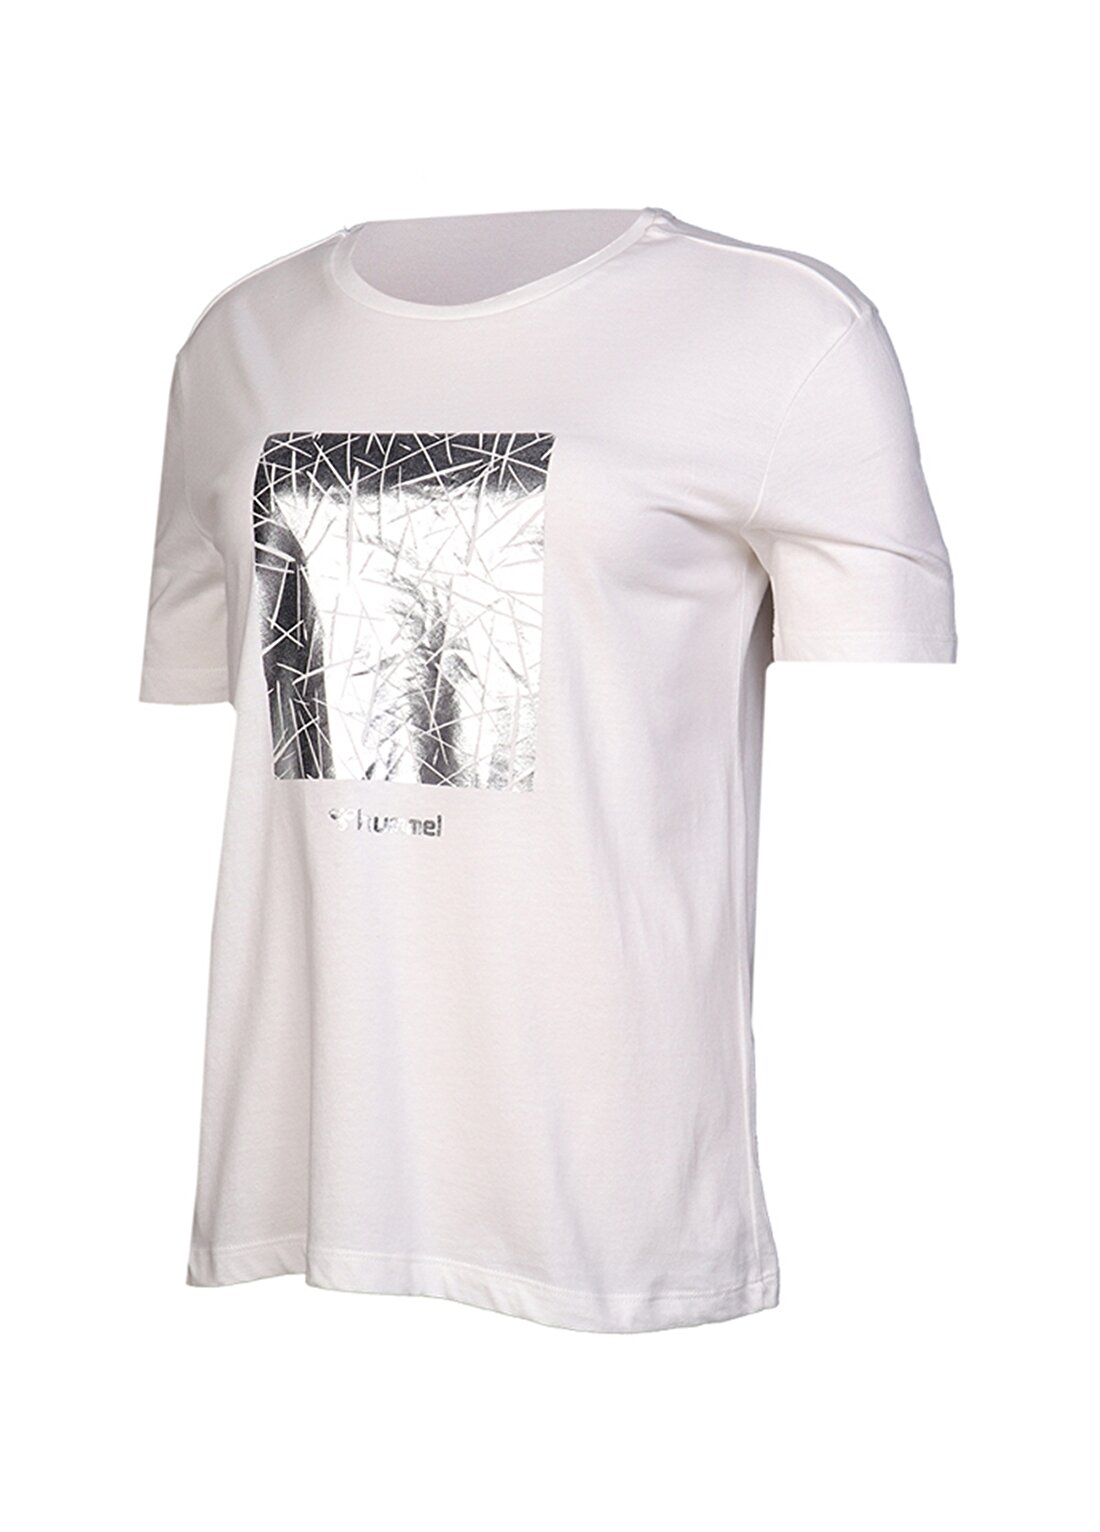 Hummel CALVINA T-SHIRT S/S TEE Beyaz Kadın T-Shirt 910964-9003